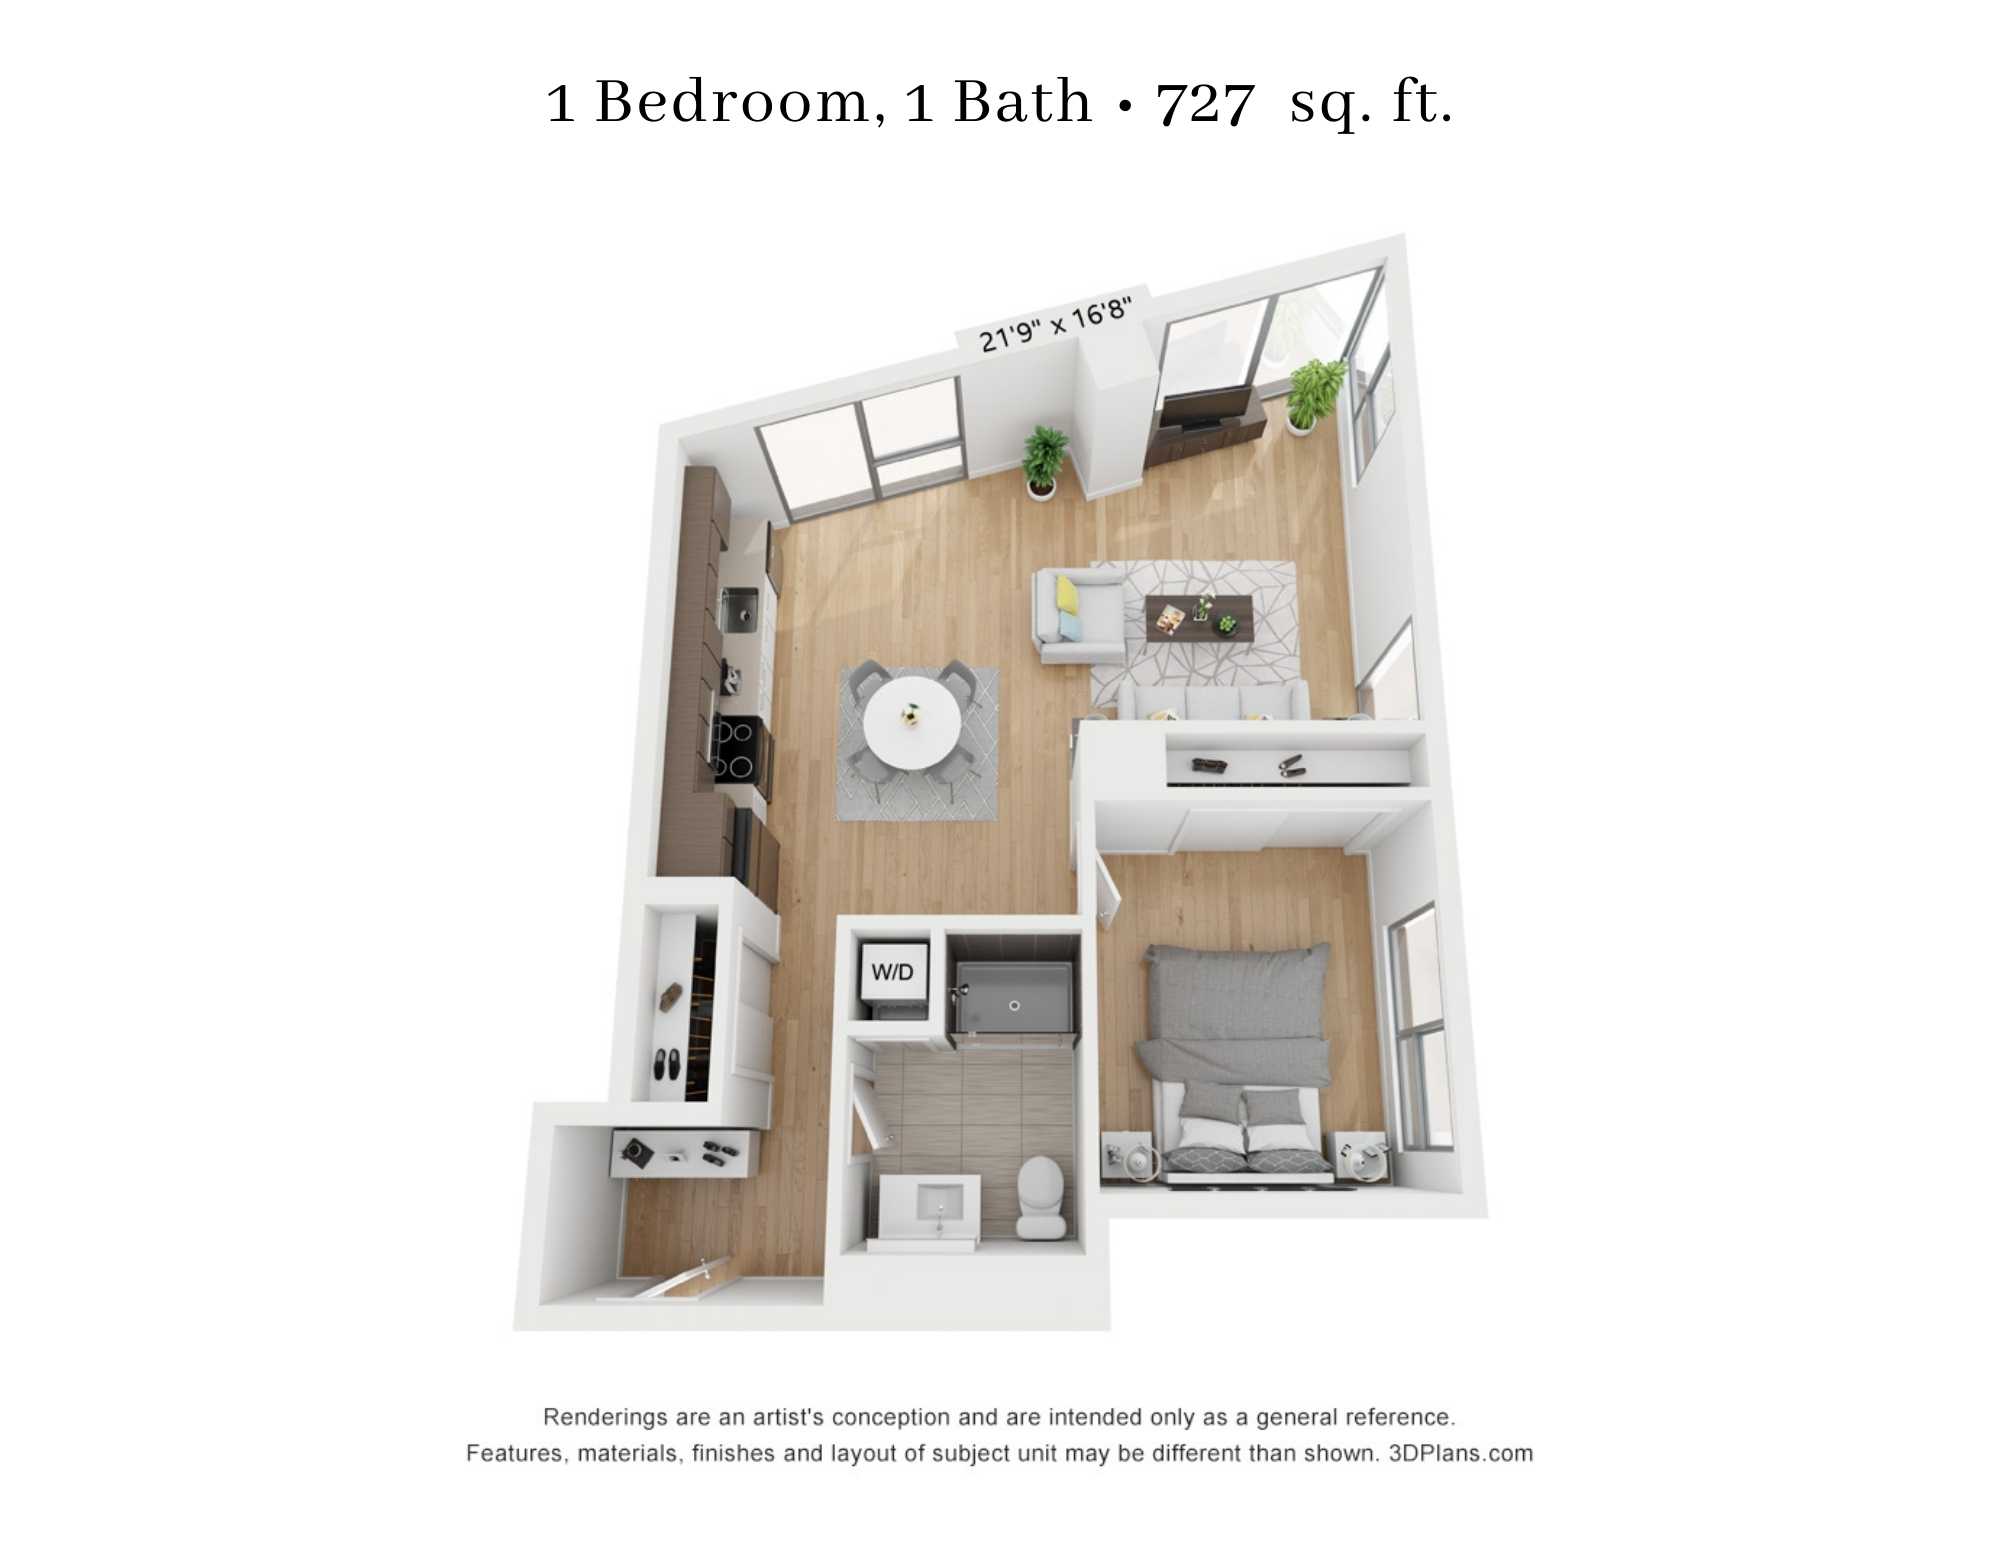 1 Bedroom - 1 Bathroom